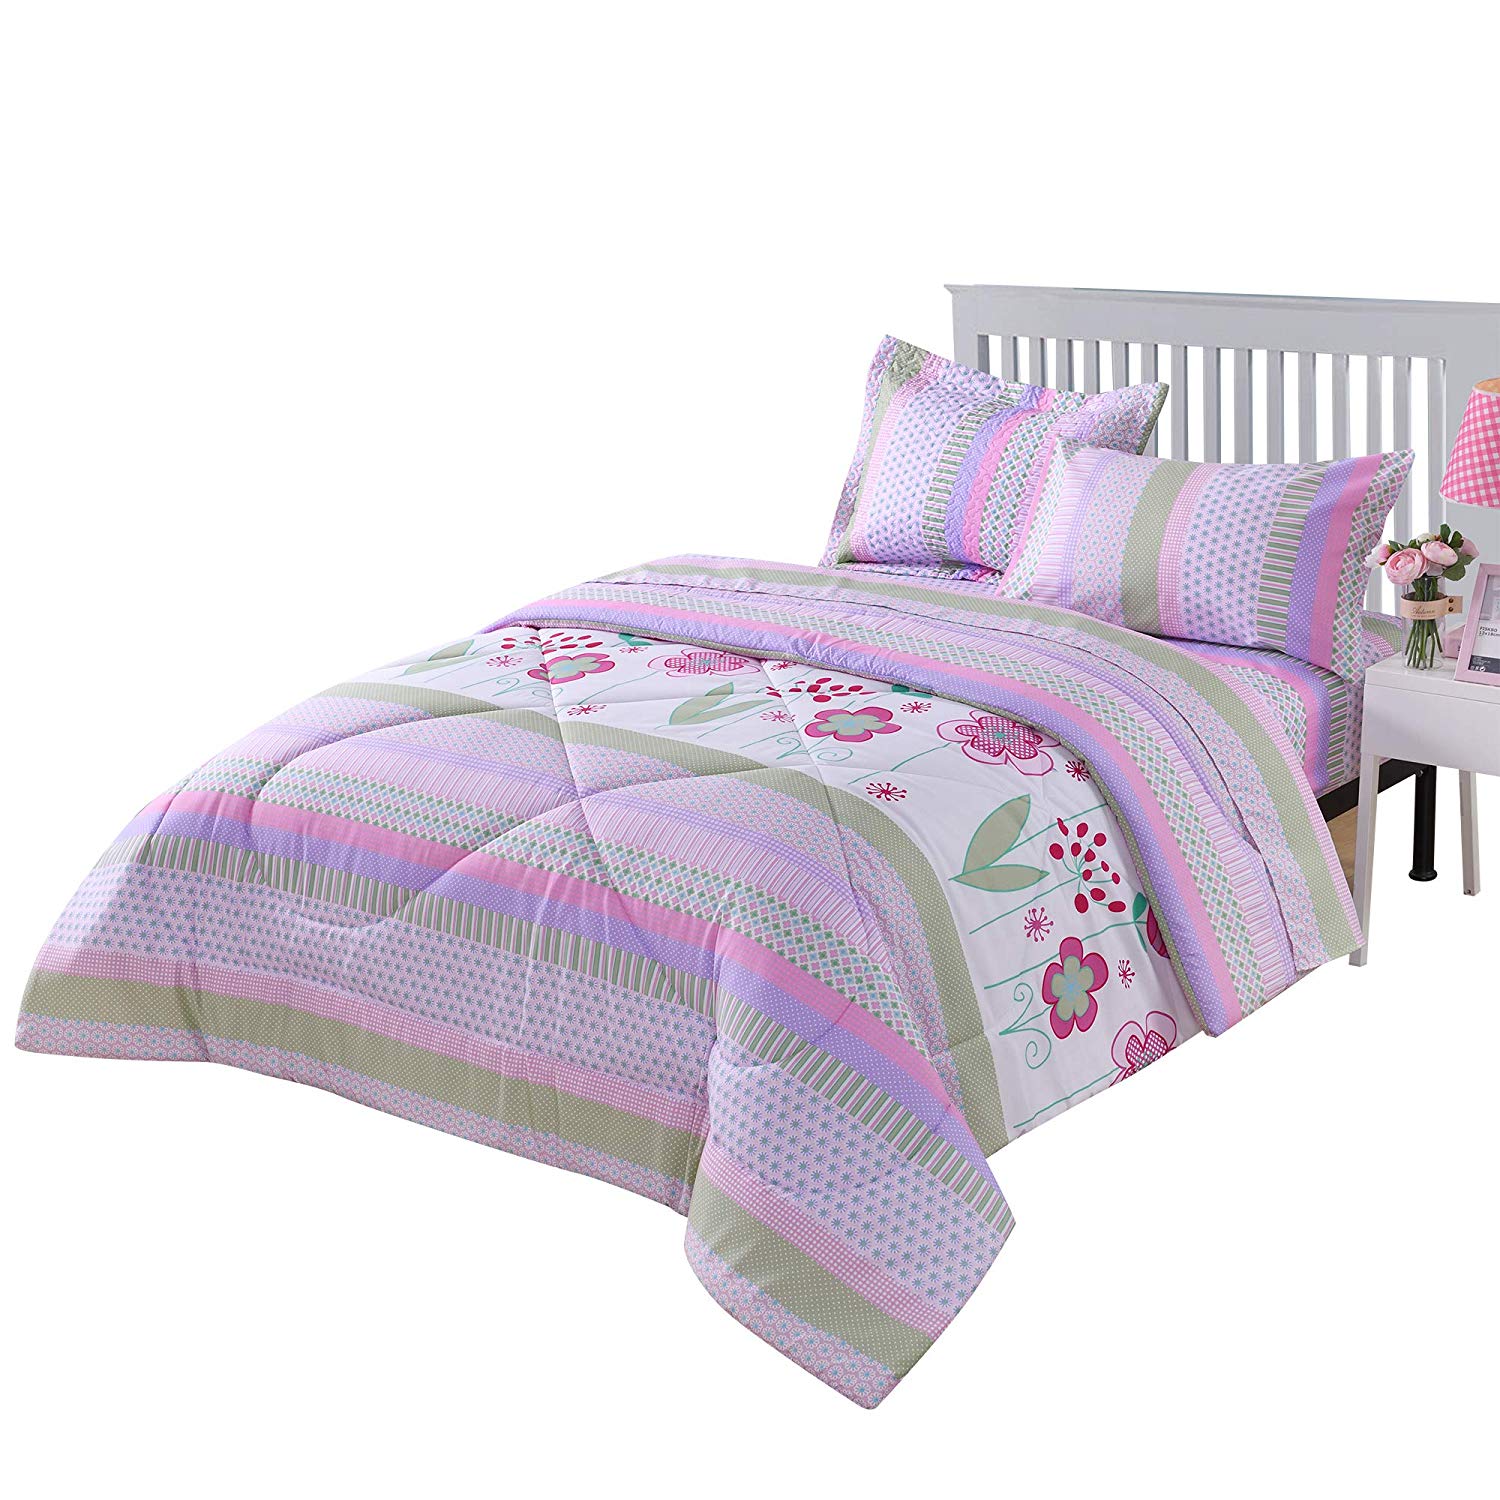 Kids Comforter Set Girls Comforter Set Kids Bedding Set Include Sheet Set Bunk Beds for Kids Twin/Full, Purple Floral